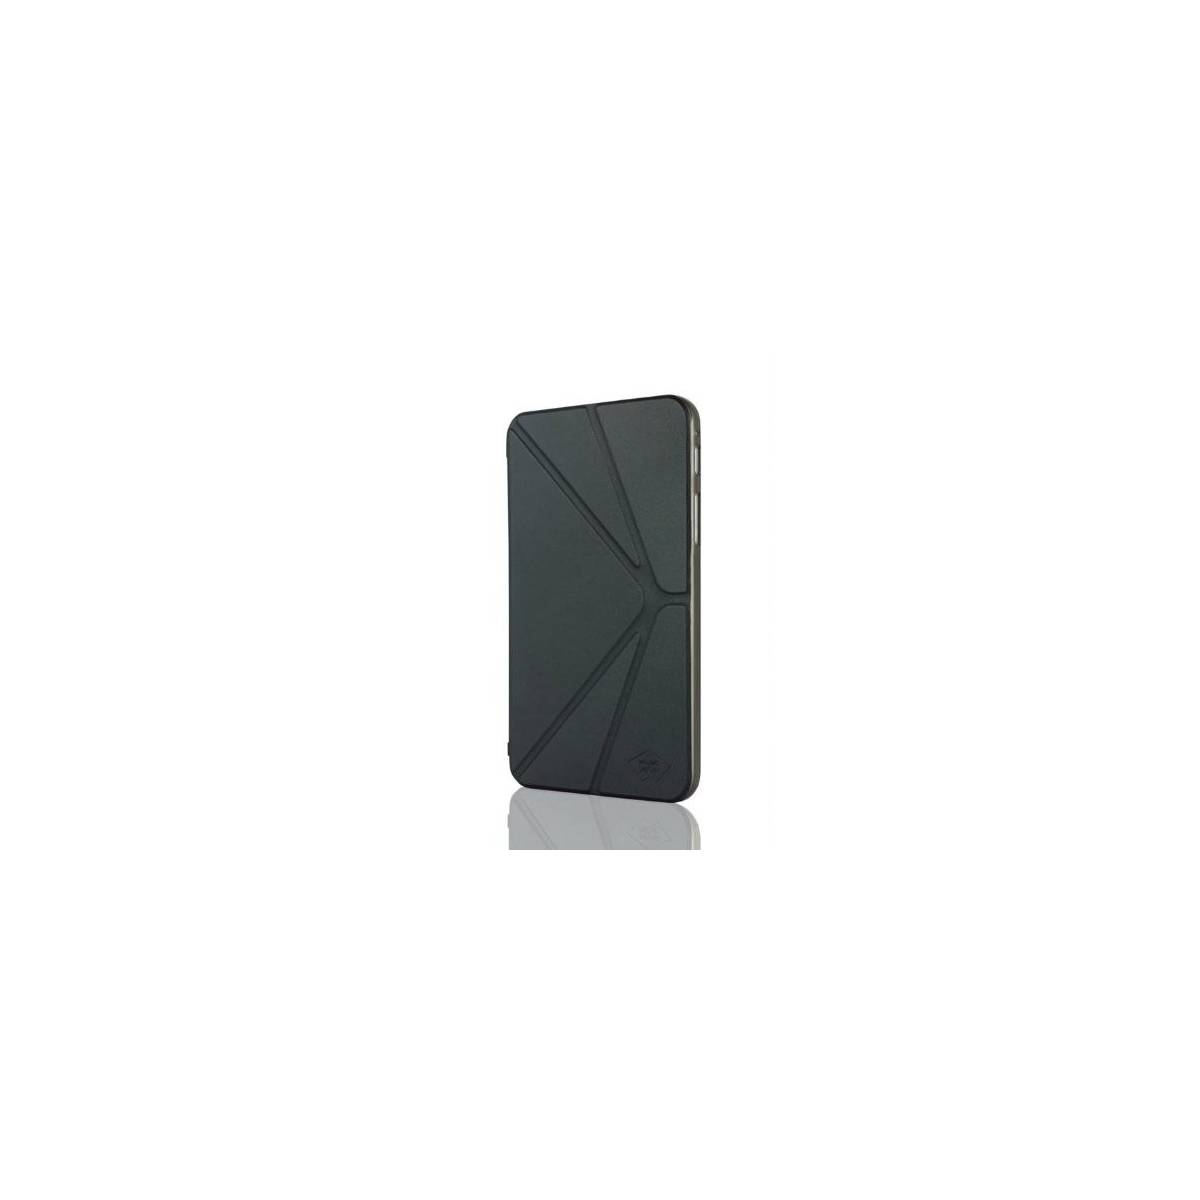 Mosaic Theory Board Serie Etui en simili cuir pour Samsung Galaxy Note 8.0 Noir 